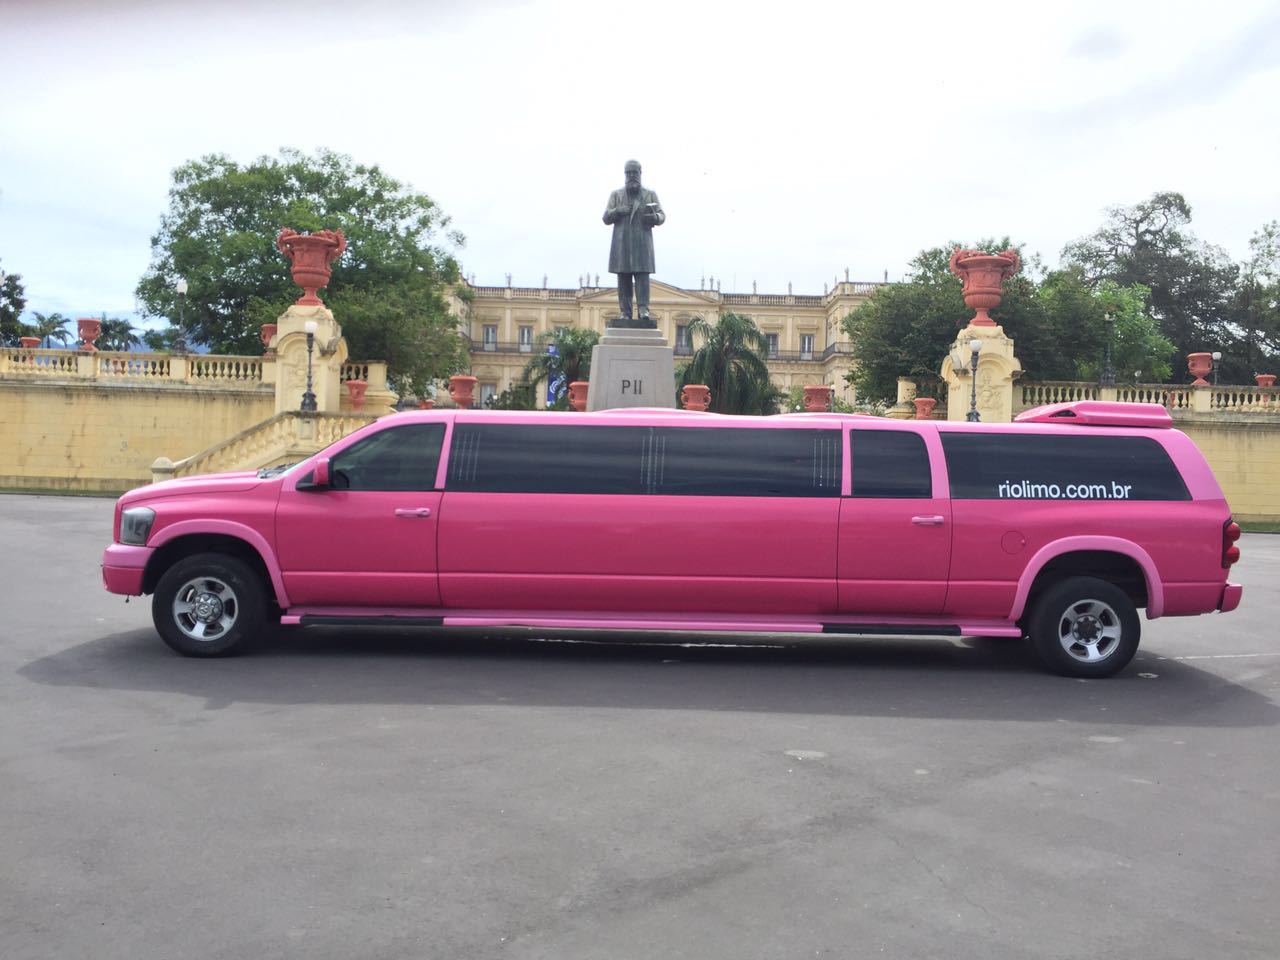 limo-pink2